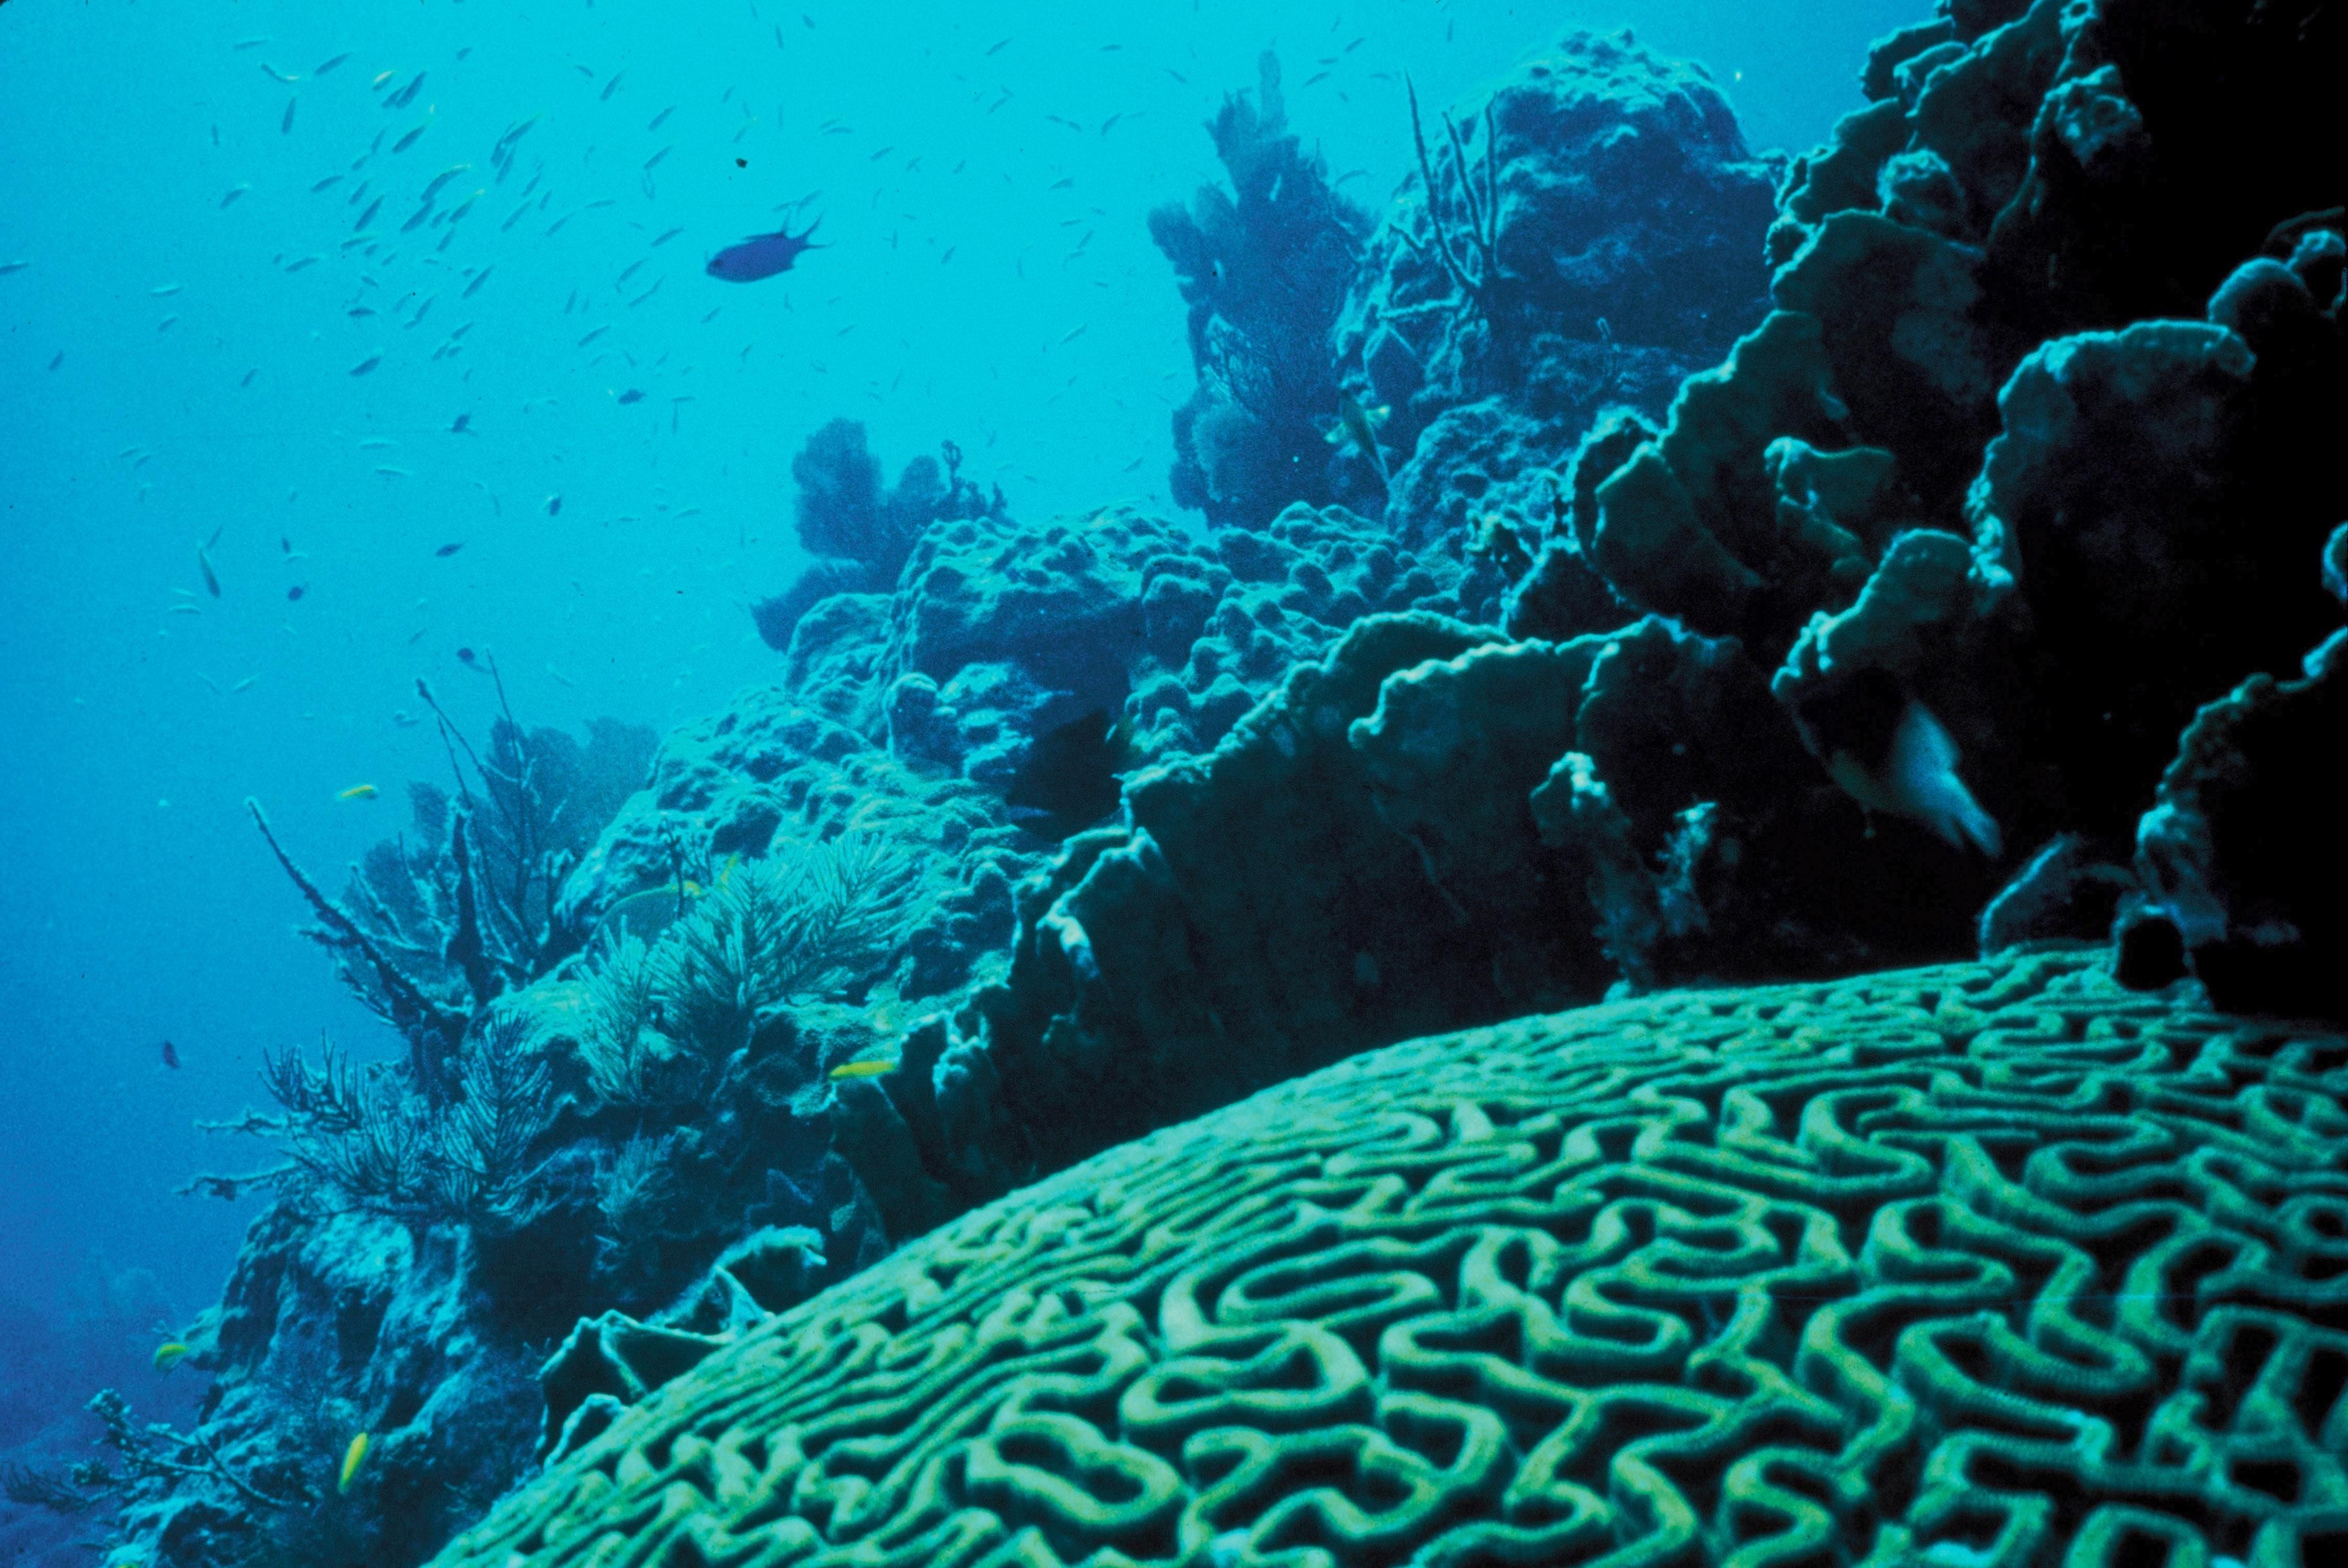     Le corail des Caraïbes touché par une inquiétante maladie 

